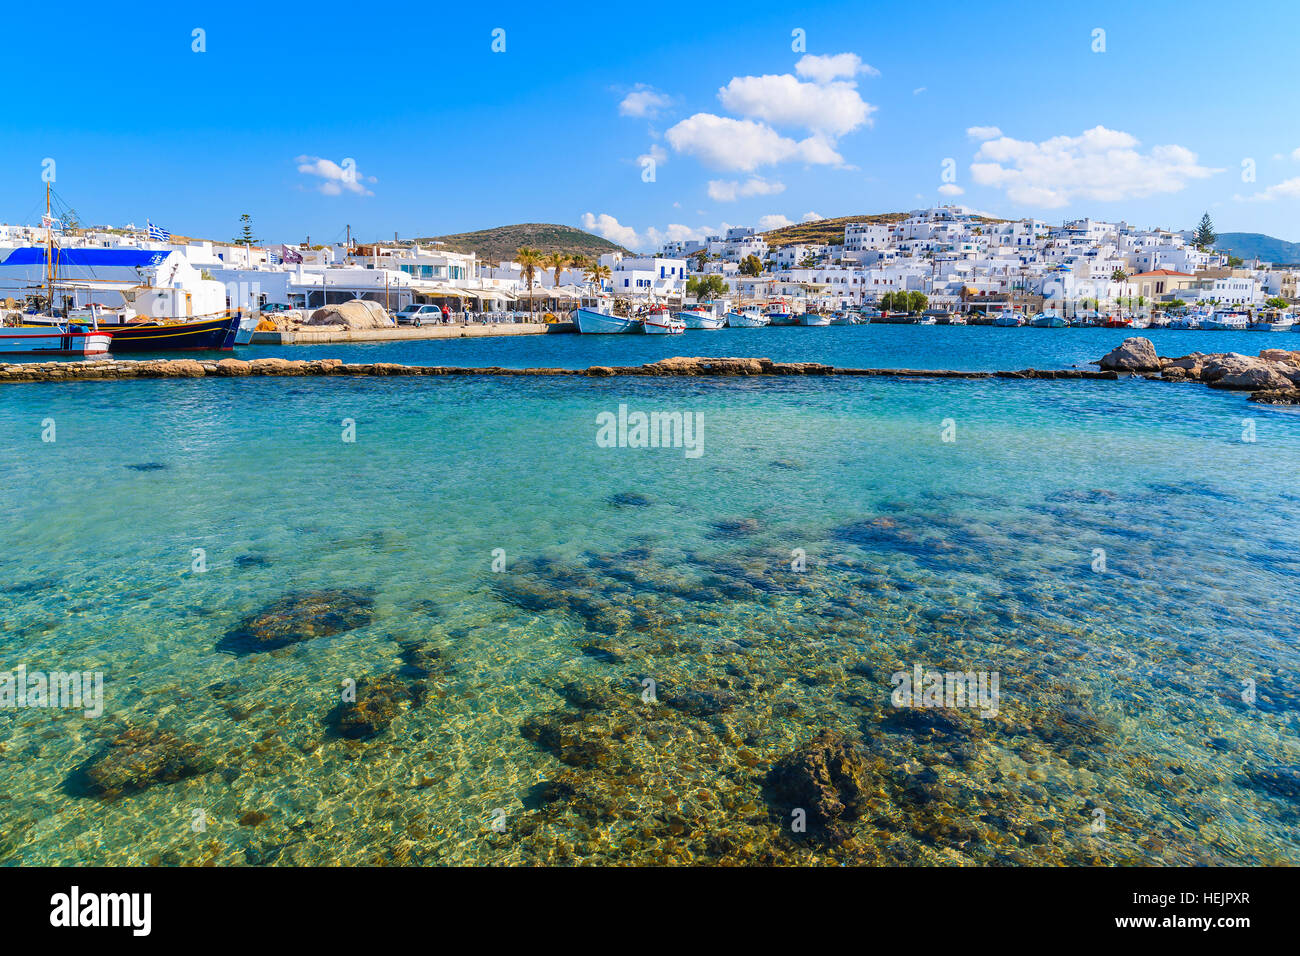 Kristallklares Meerwasser in Naoussa Bucht mit Hafen in Ferne, Insel Paros, Griechenland Stockfoto